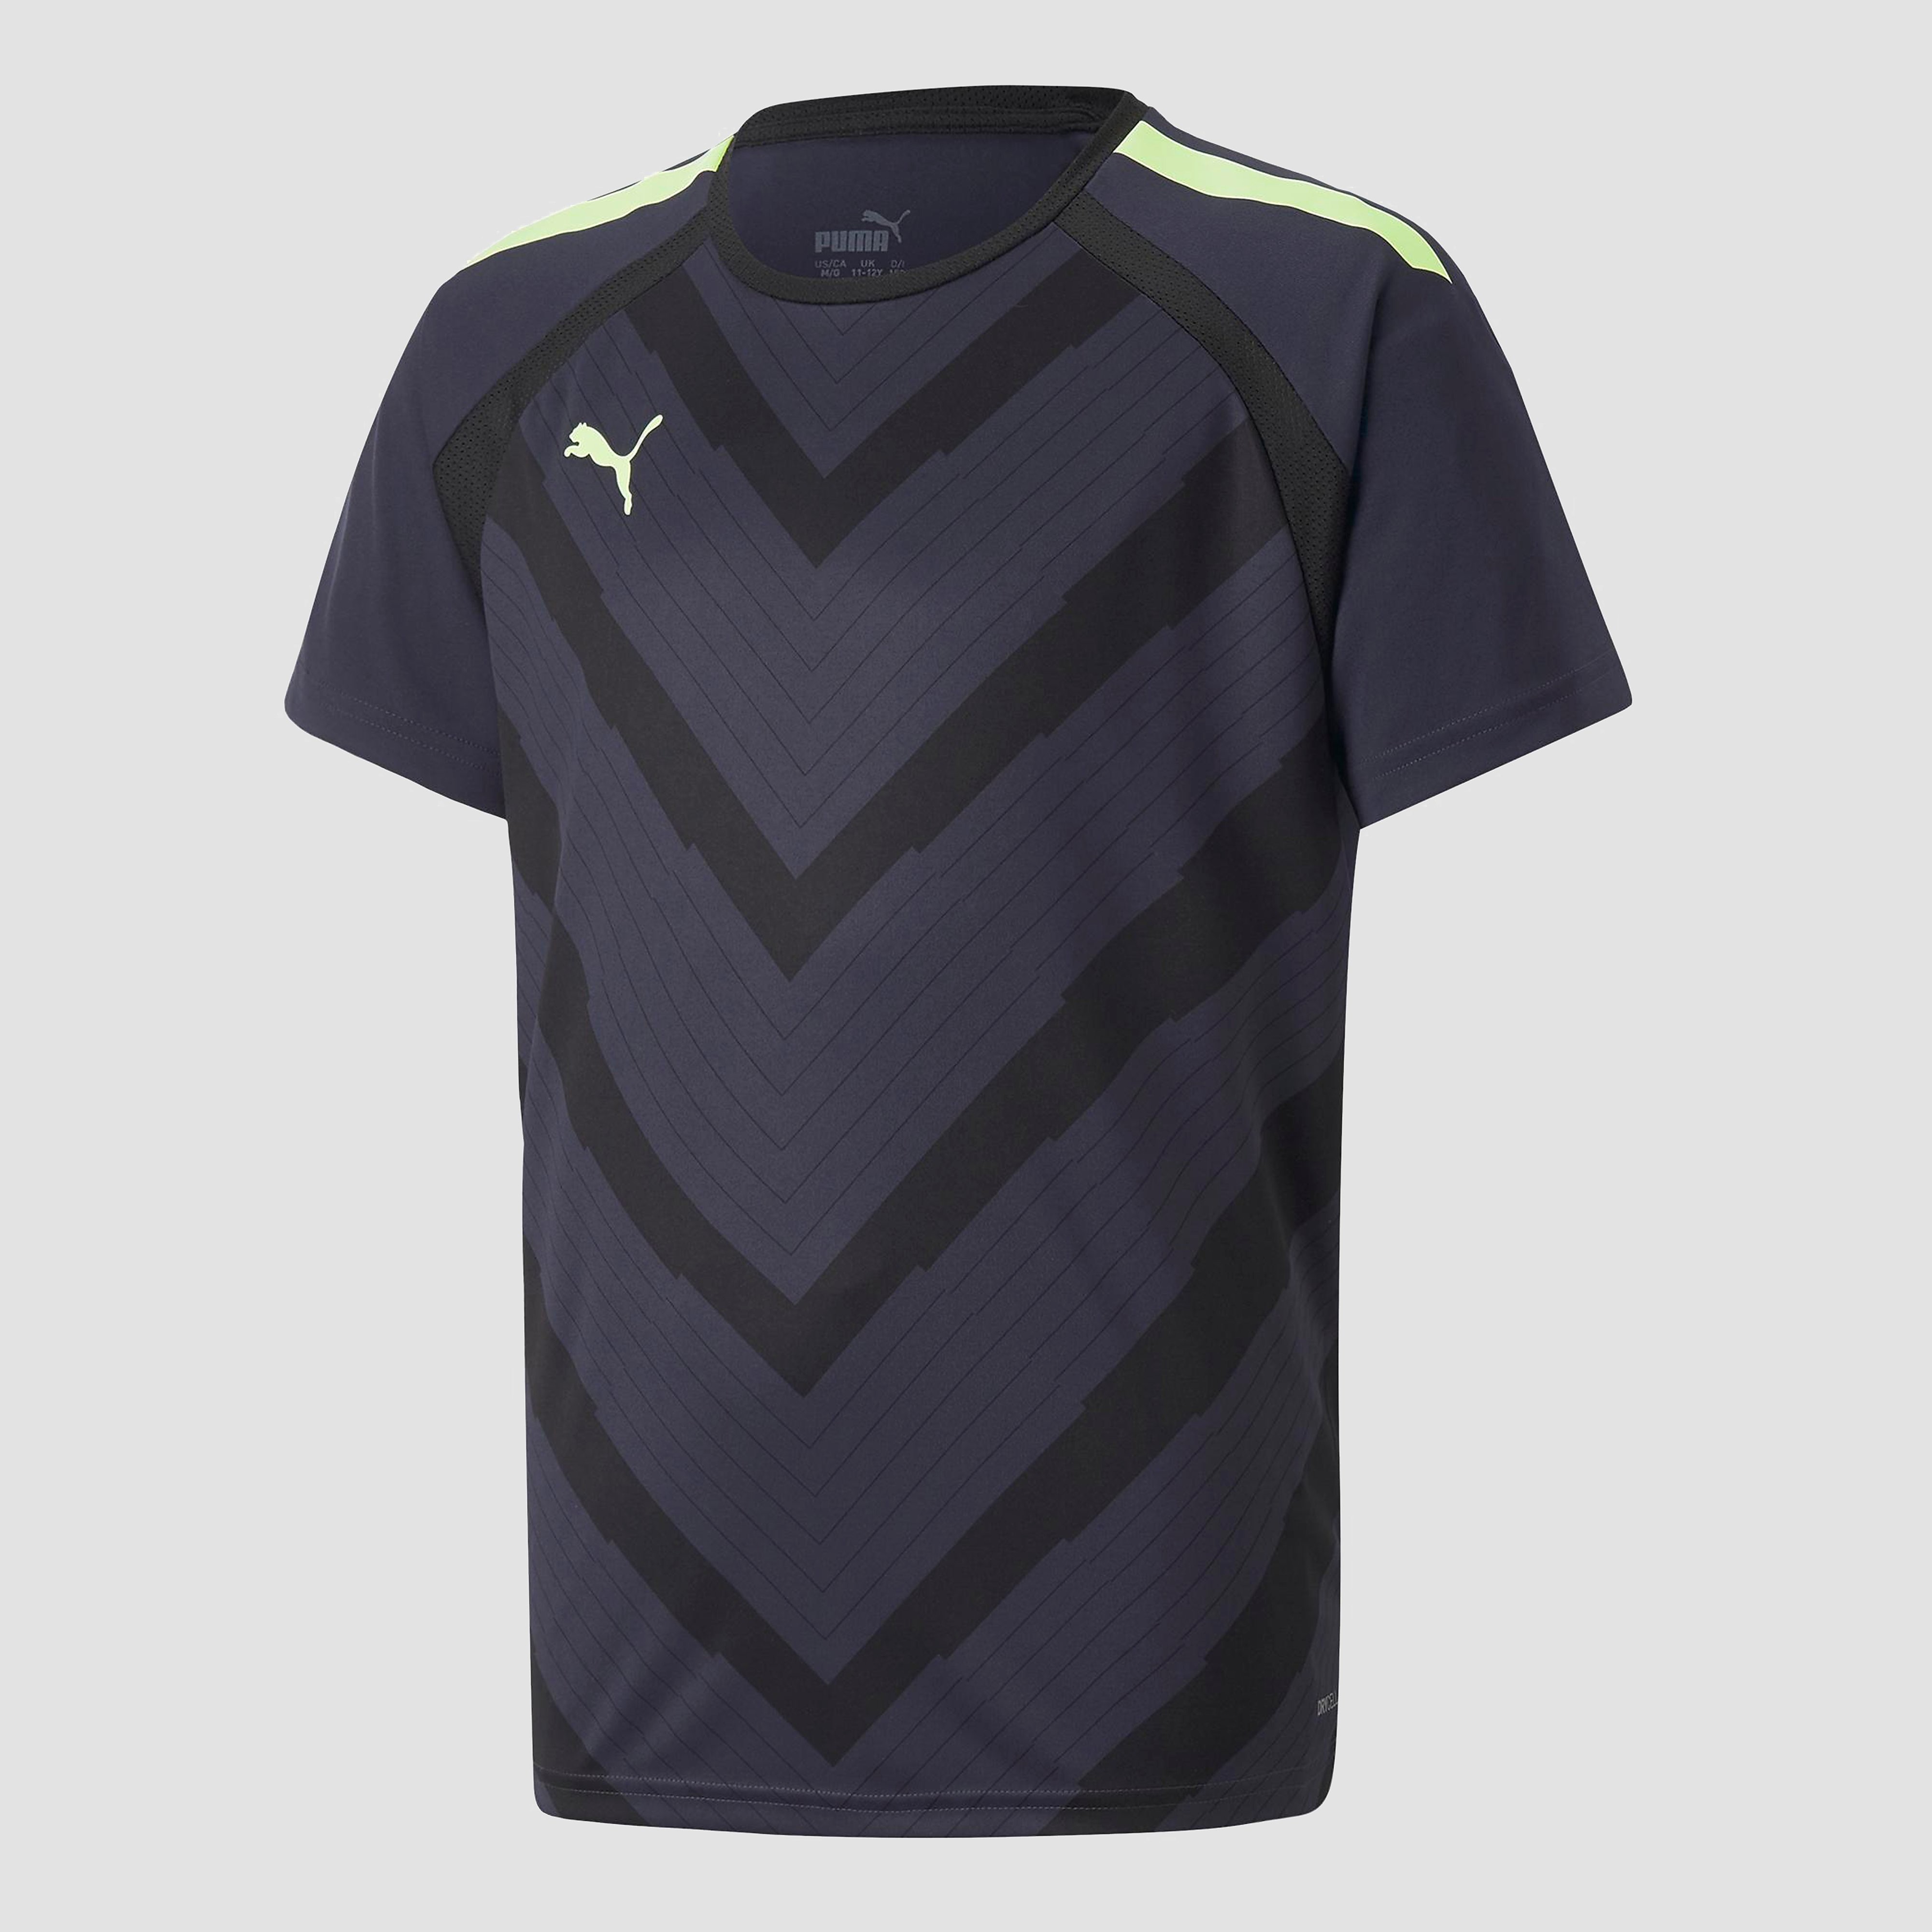 Puma Teamliga Graphic Jersey kinder sport T-shirt - Blauw - Maat 170/176